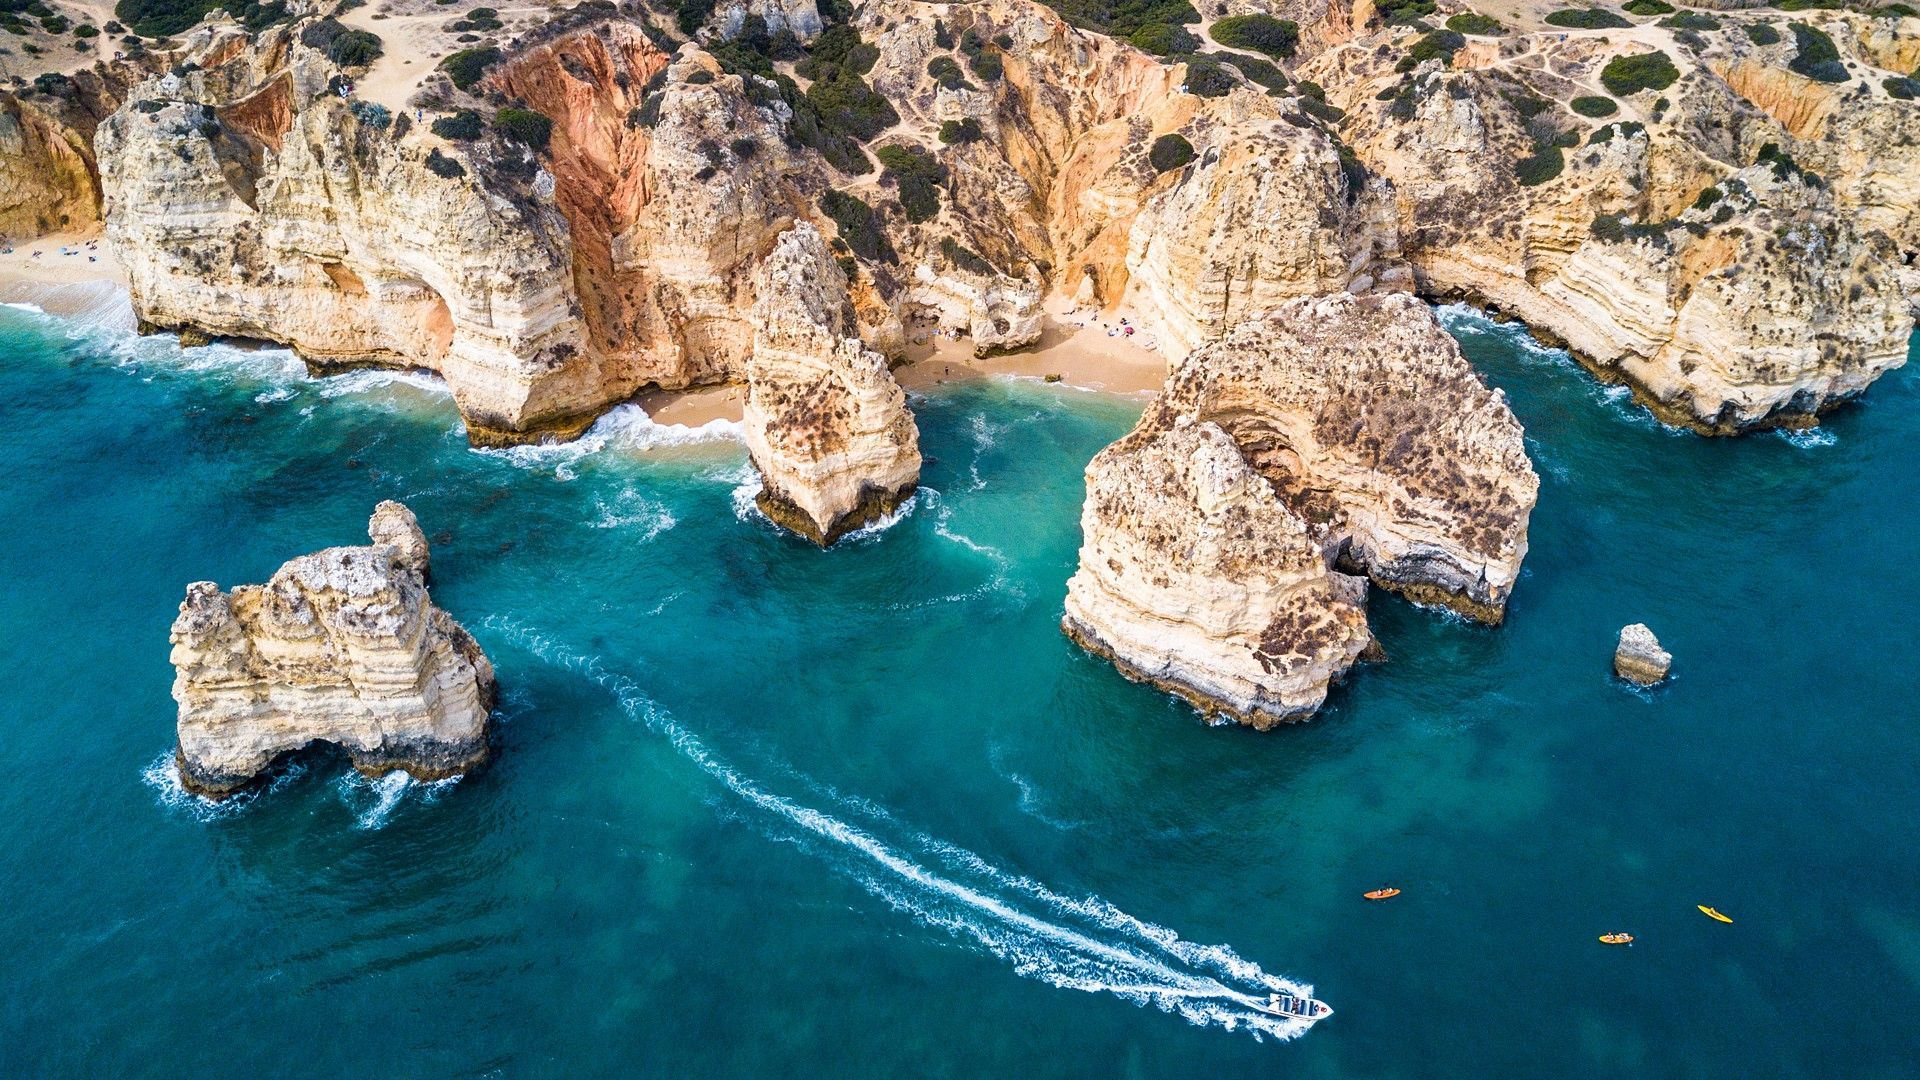 Cliffs and sea stacks of Ponta da Piedade, Lagos, Algarve